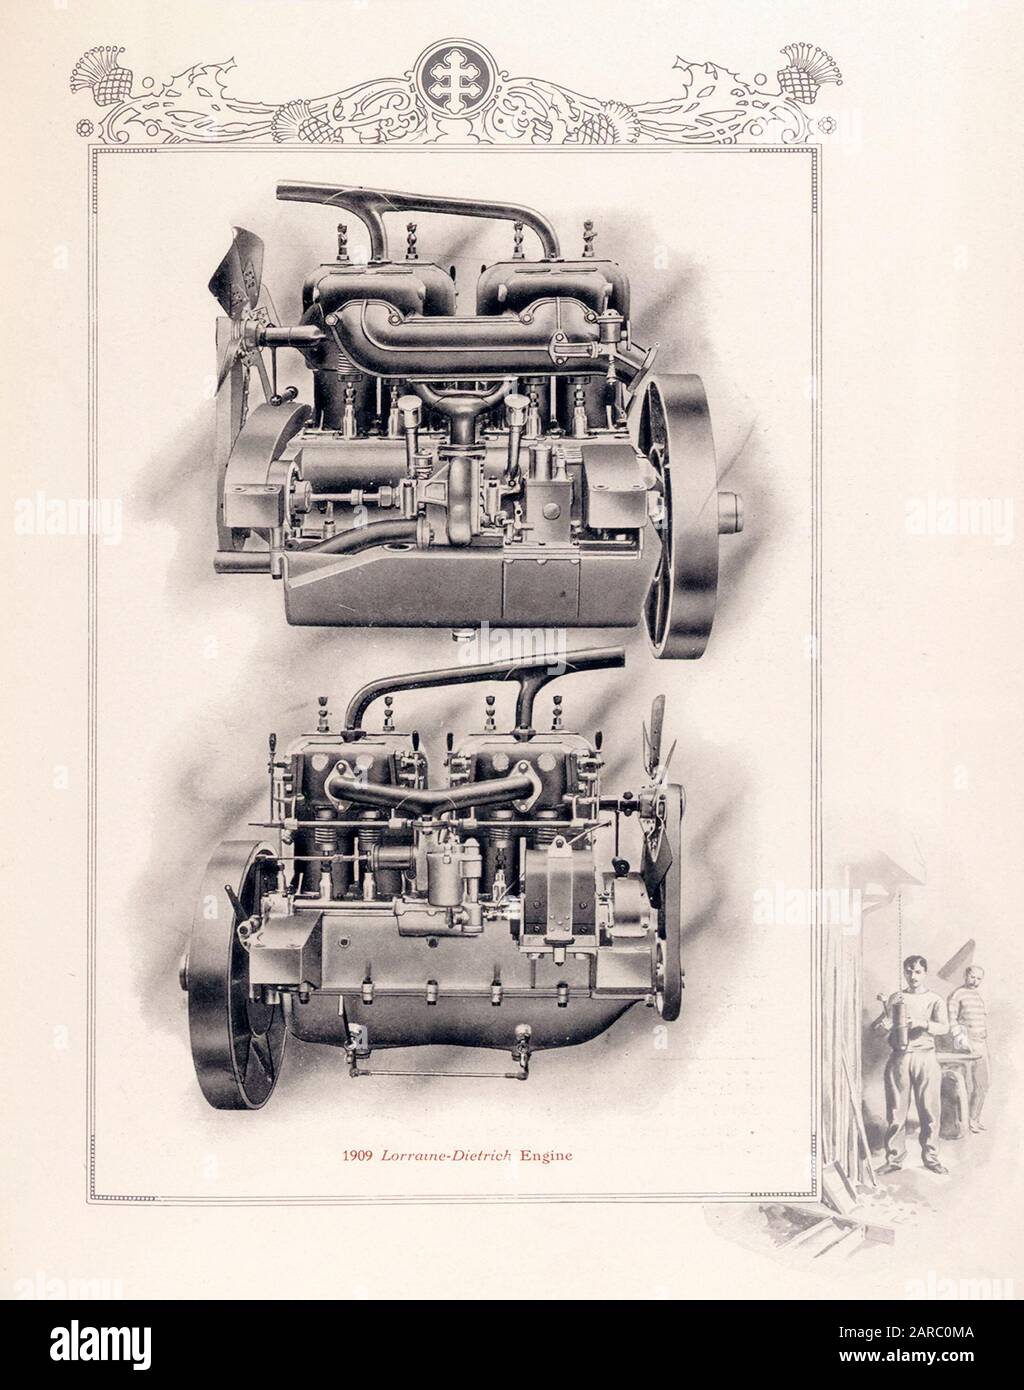 Lorraine Diétrich Automobiles, Vintage Car Engine, Illustration, 1909 Foto Stock